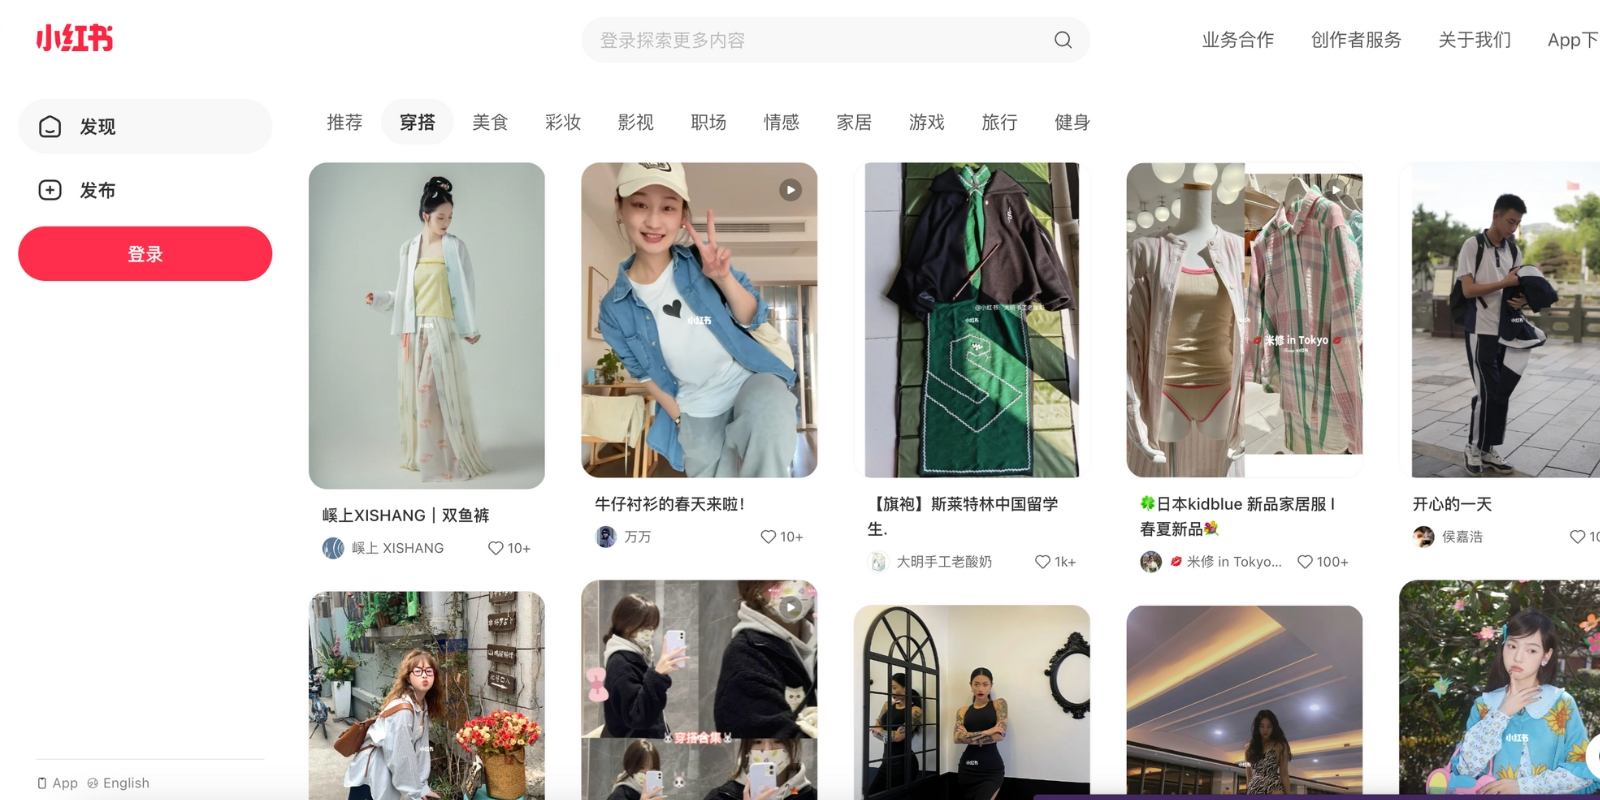 Tiểu Hồng Thụ là mạng xã hội để chia sẻ các mẹo du lịch, ẩm thực, lối sống kết hợp với thương mại điện tử